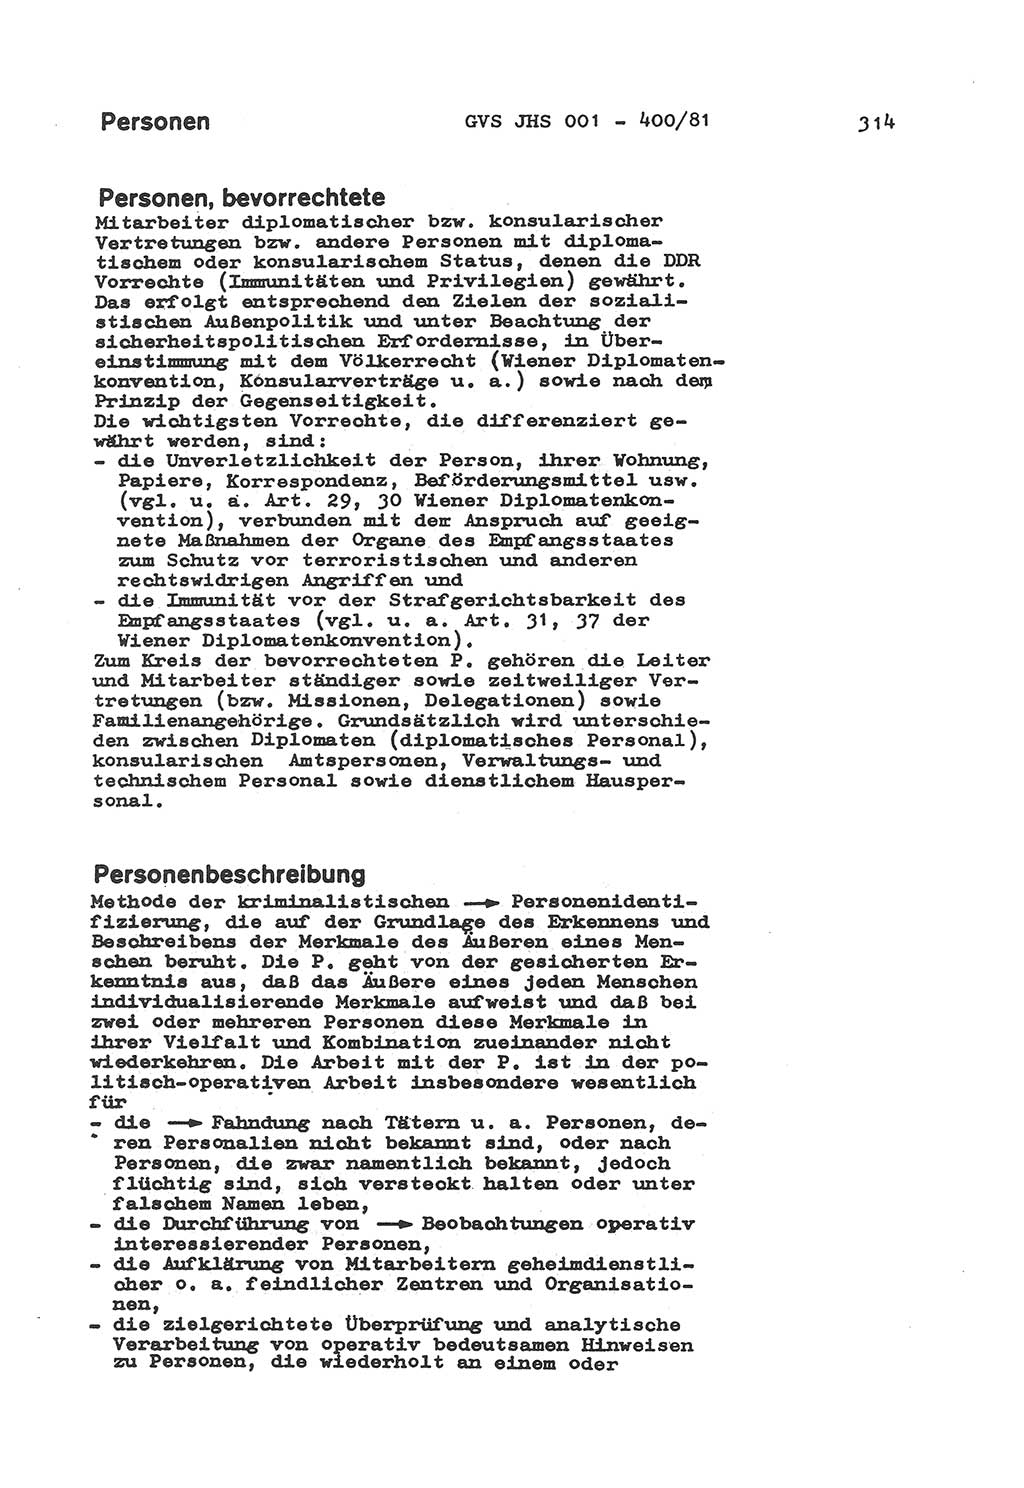 Wörterbuch der politisch-operativen Arbeit, Ministerium für Staatssicherheit (MfS) [Deutsche Demokratische Republik (DDR)], Juristische Hochschule (JHS), Geheime Verschlußsache (GVS) o001-400/81, Potsdam 1985, Blatt 314 (Wb. pol.-op. Arb. MfS DDR JHS GVS o001-400/81 1985, Bl. 314)